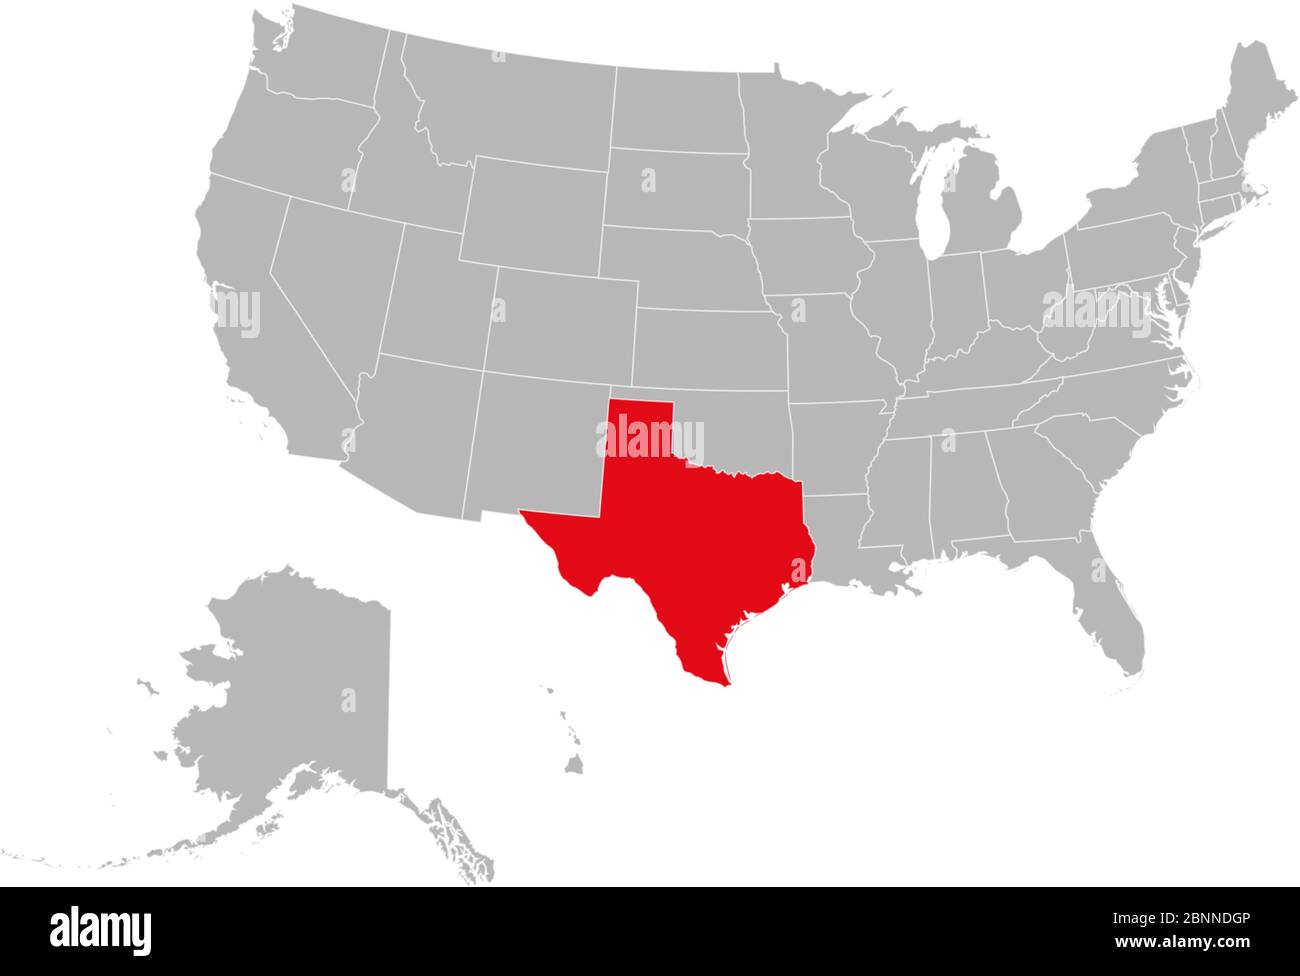 Mappa degli Stati Uniti che evidenzia l'illustrazione del vettore di stato del texas. Sfondo grigio. Mappa politica degli stati Uniti. Illustrazione Vettoriale